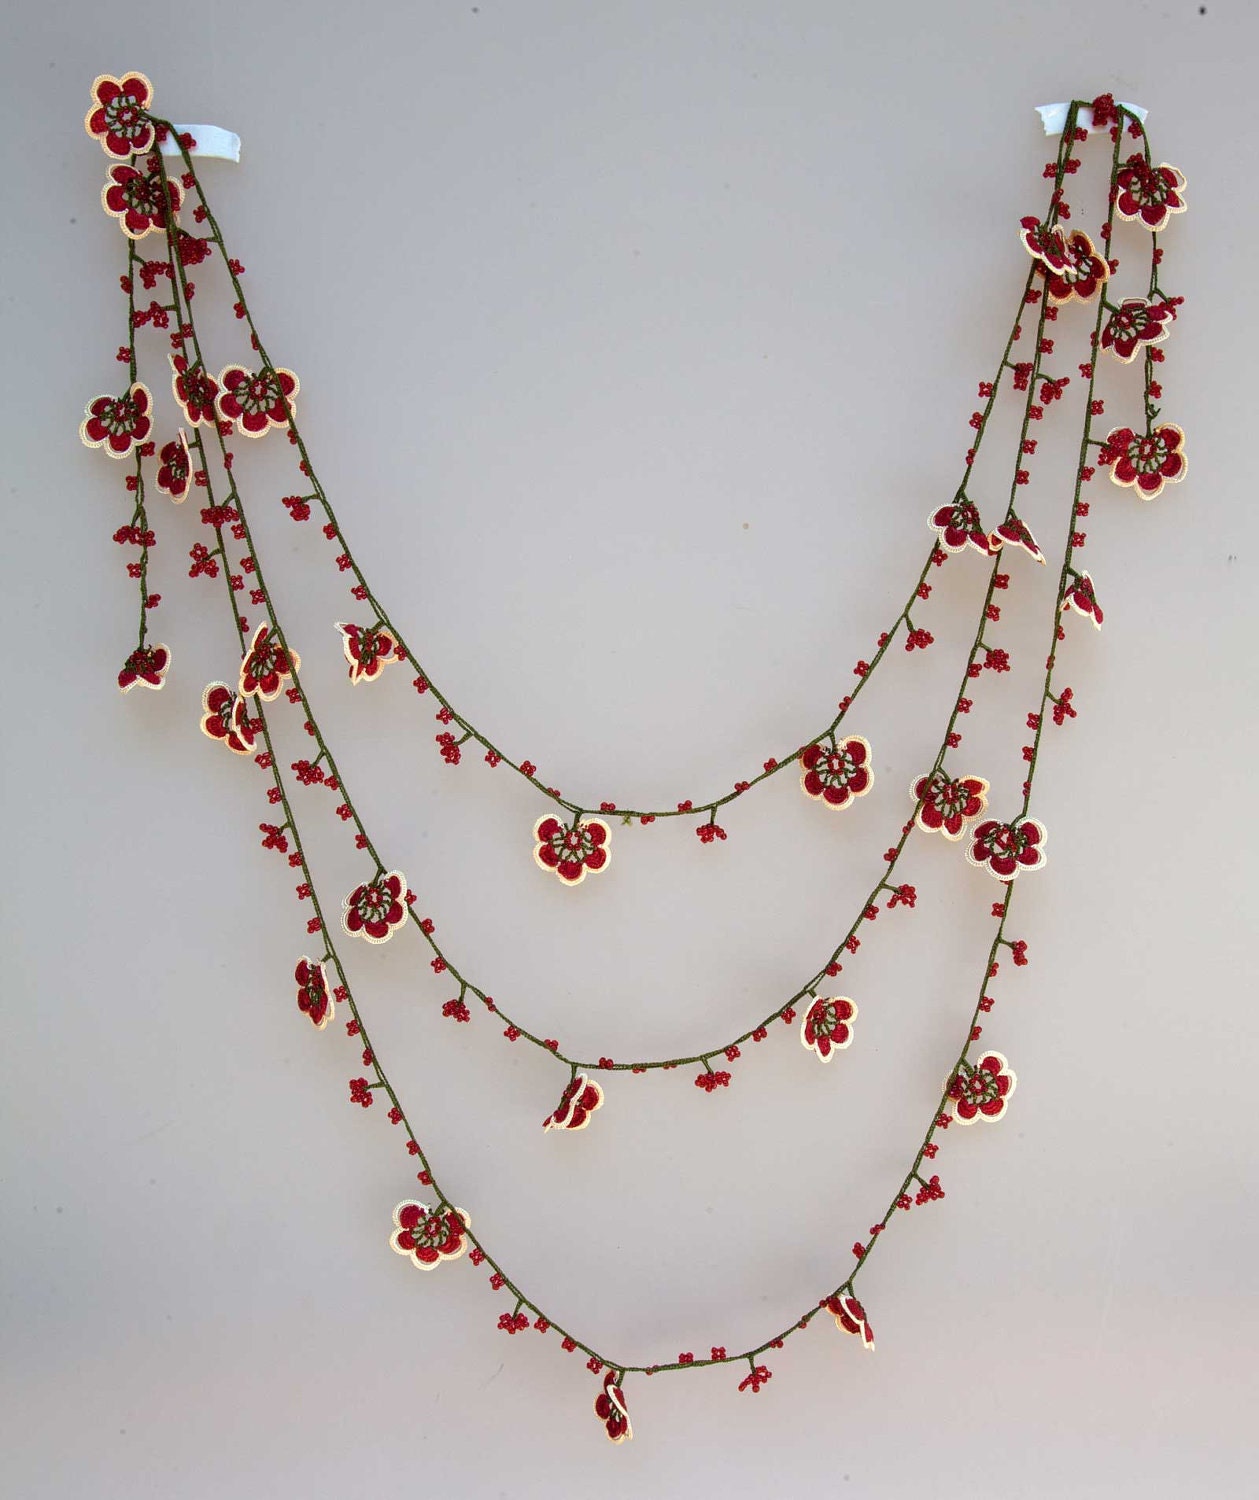 turkish lace - needle lace - oya necklace - FREE SHIPMENT - 008-09